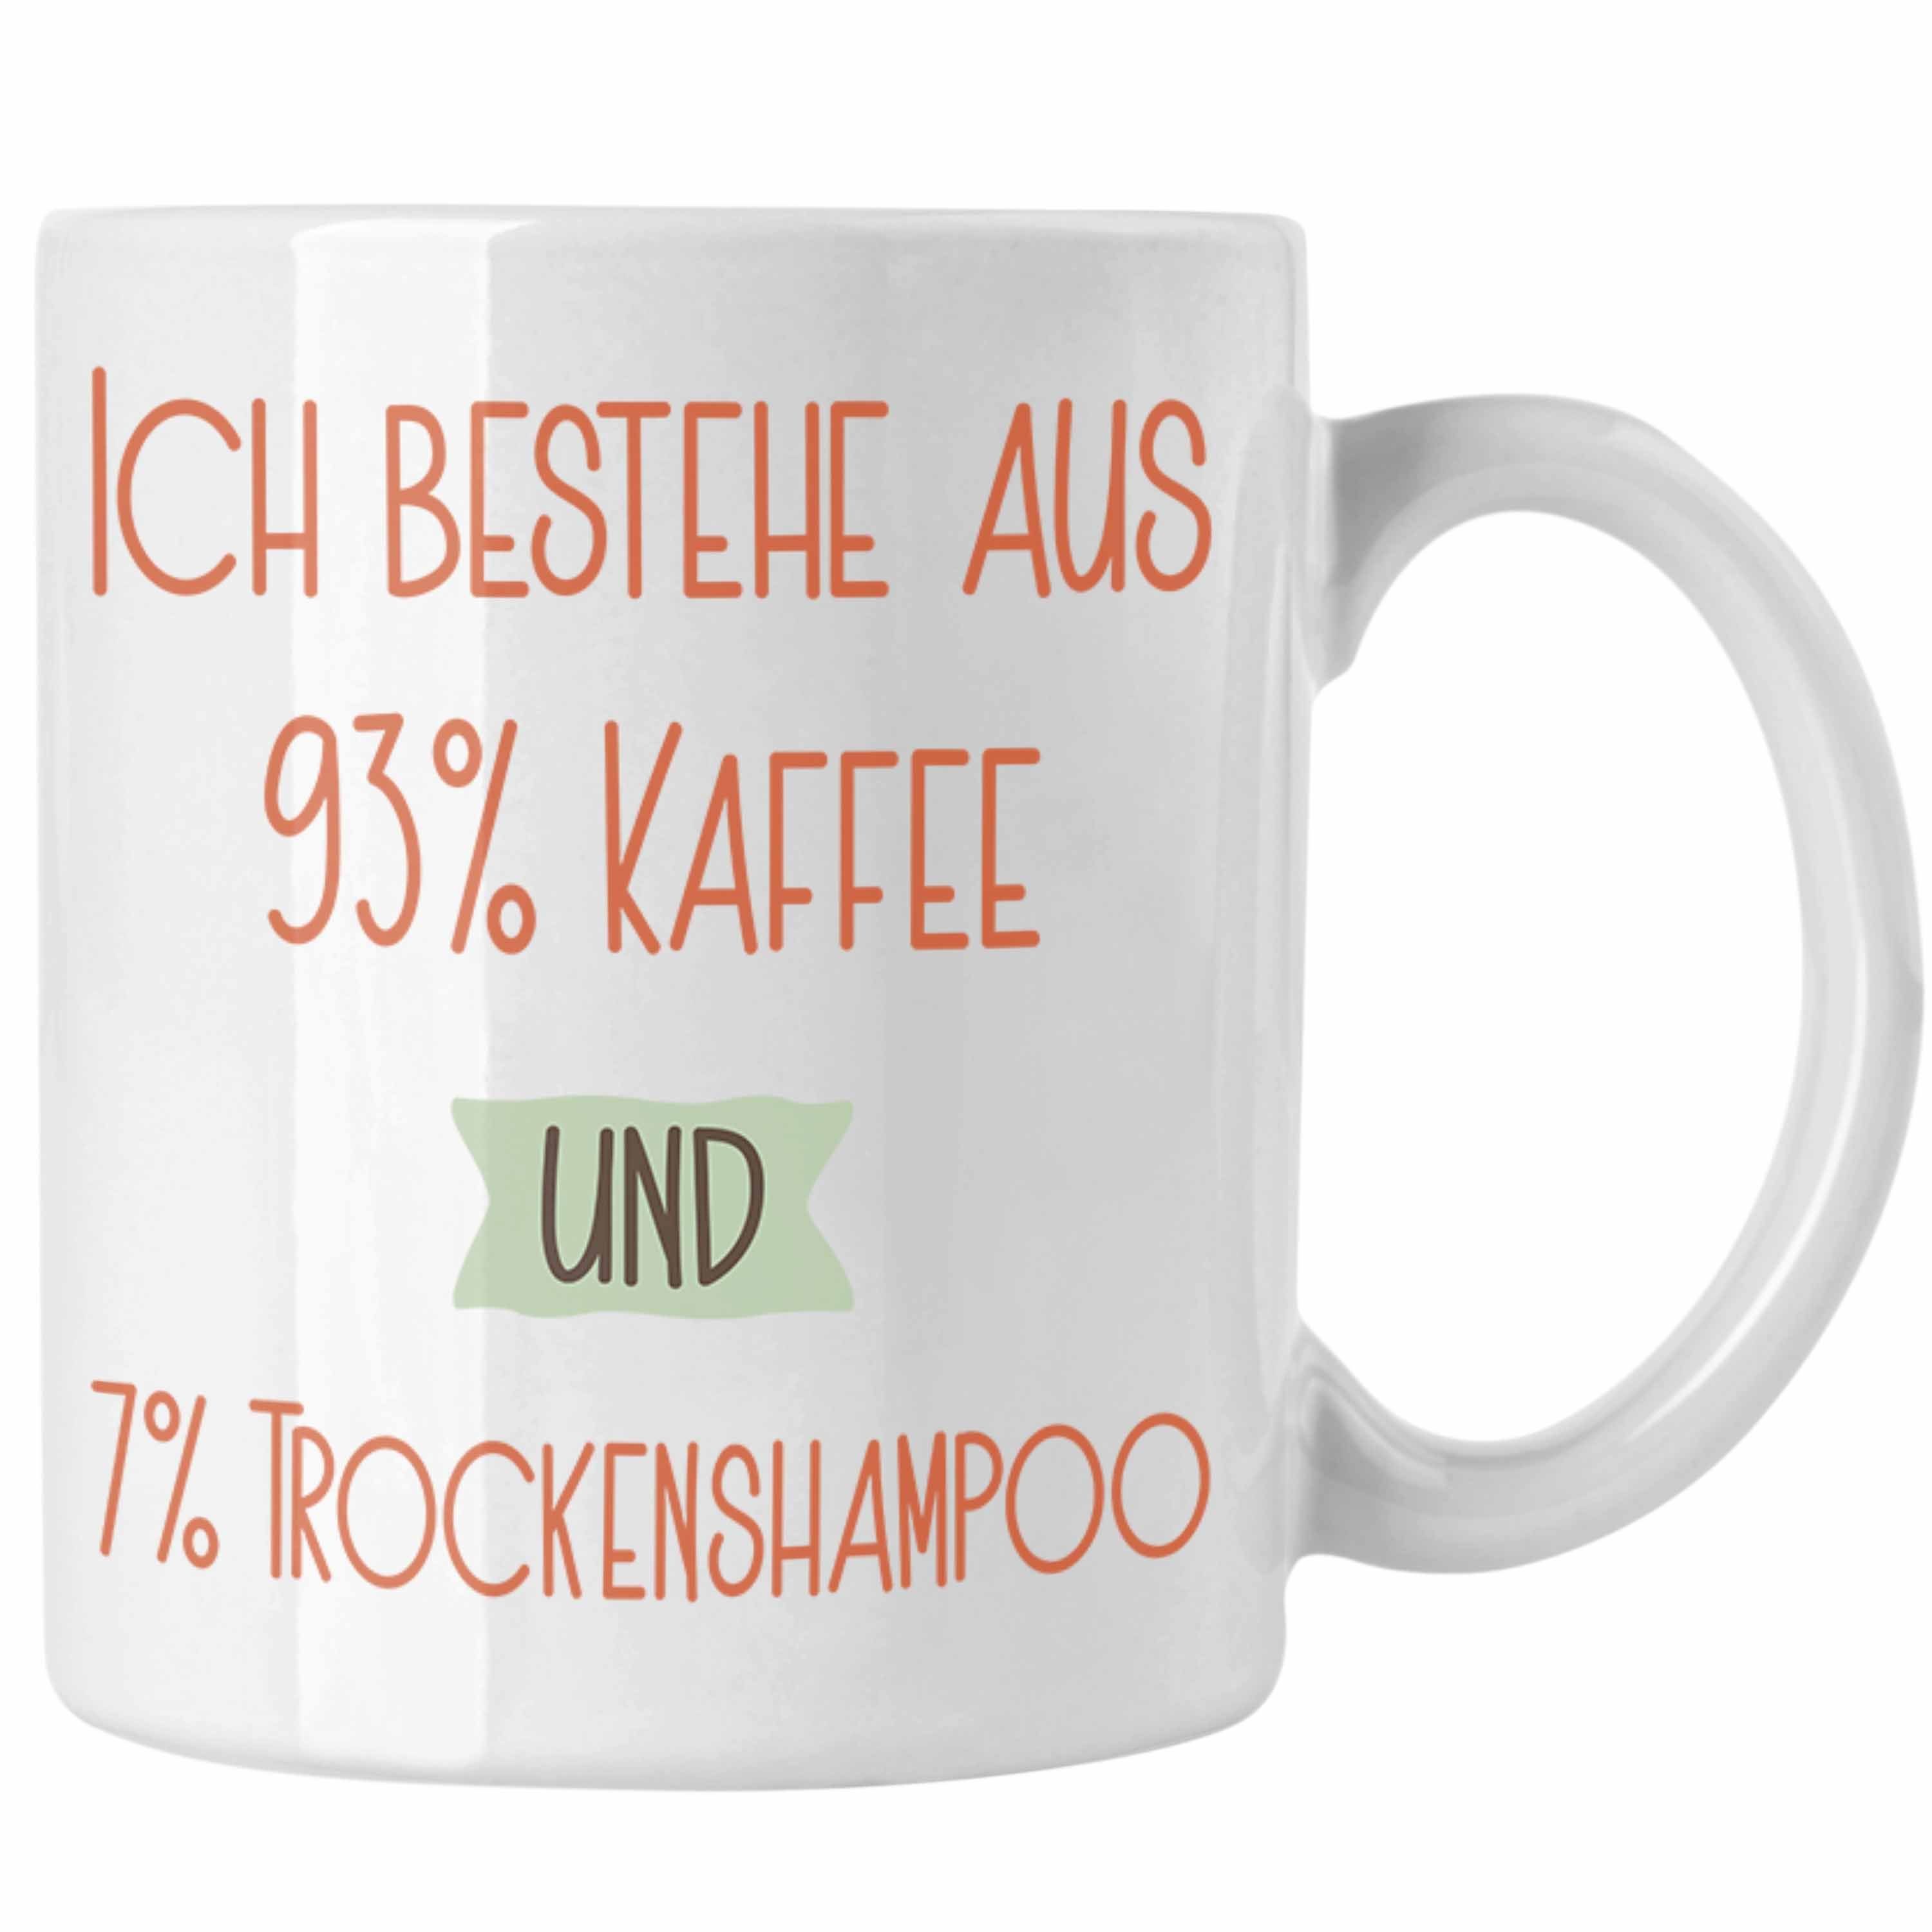 Trendation Tasse 93% Kaffee und 7% Trockenshampoo Tasse Geschenk Lustiger Spruch Für Ko Weiss | Teetassen